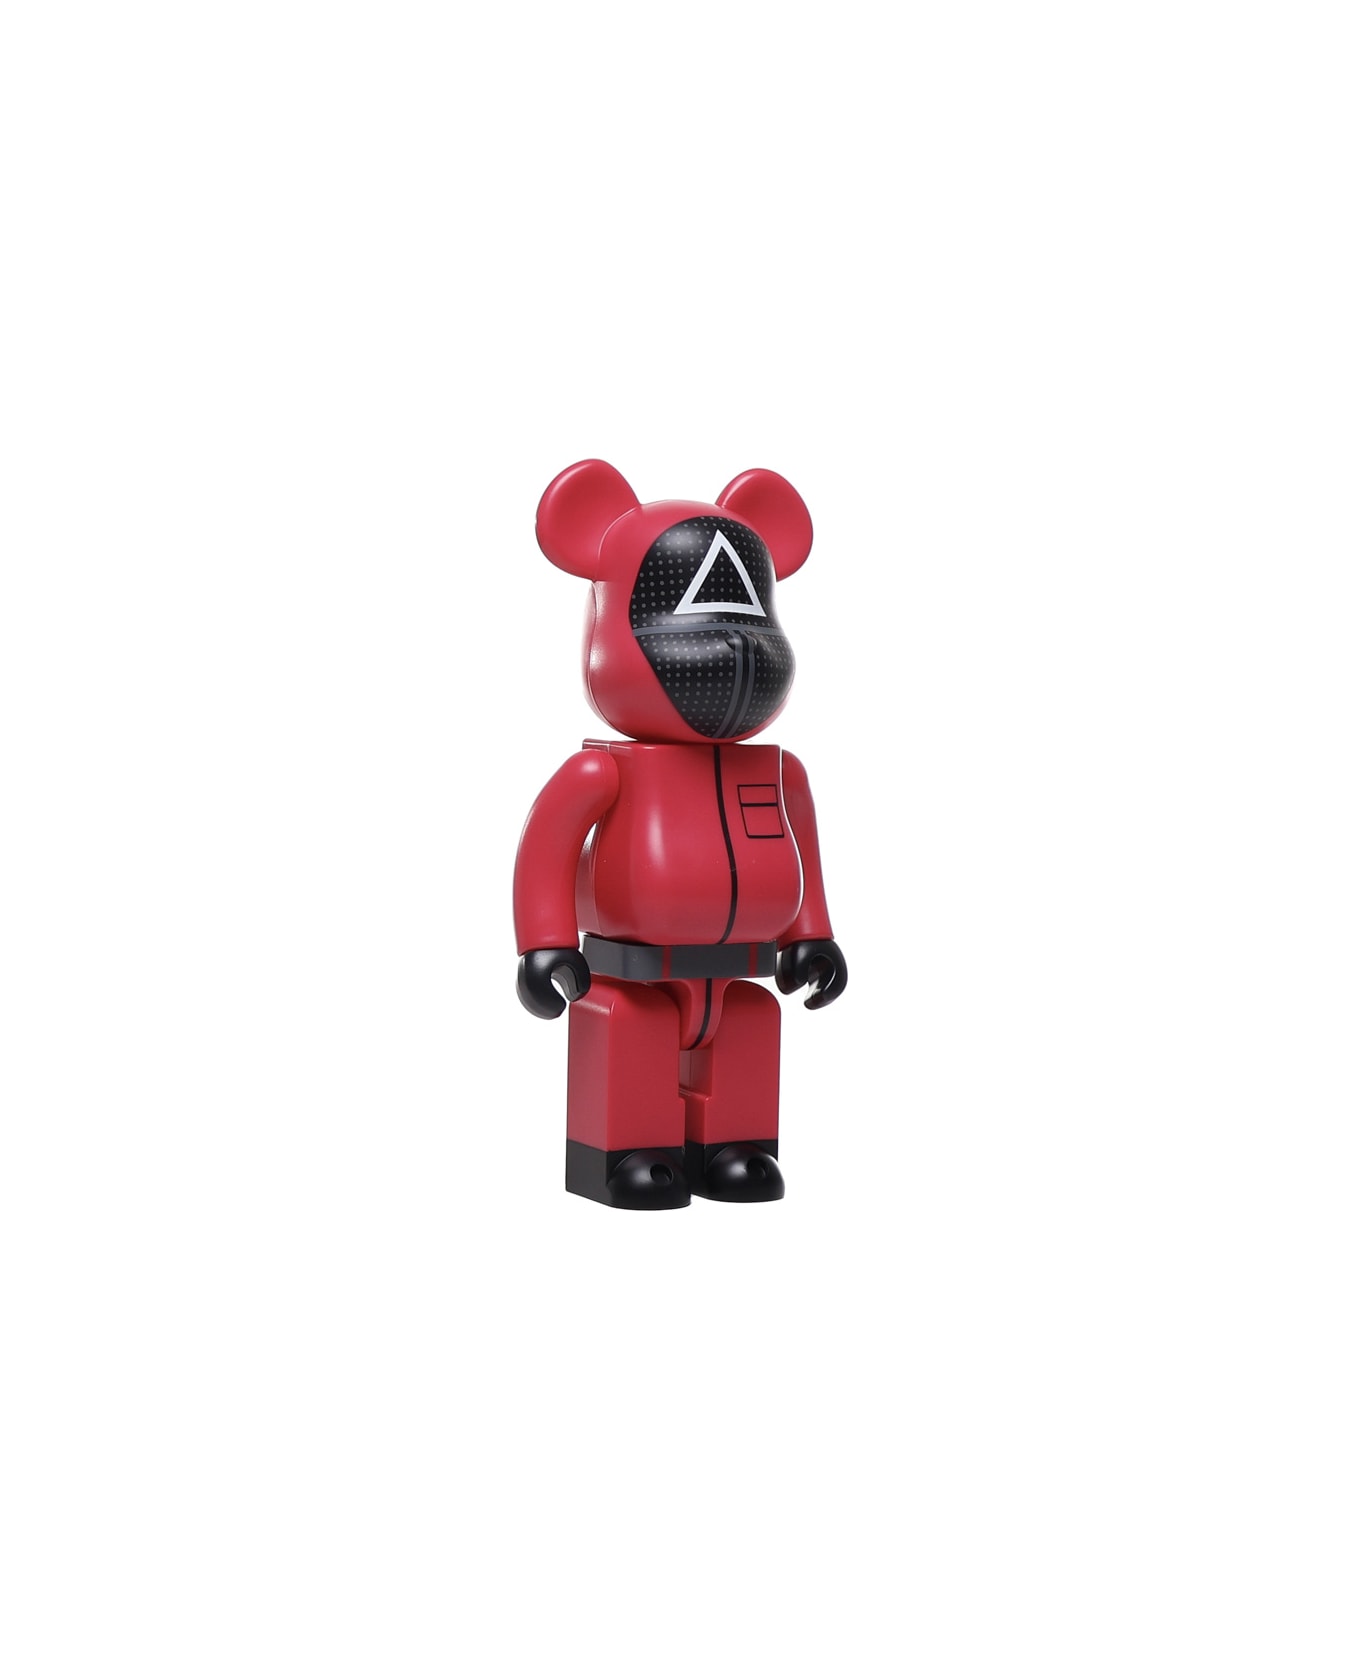 Medicom Toy Squid Game Guard Square - Black, red アクセサリー